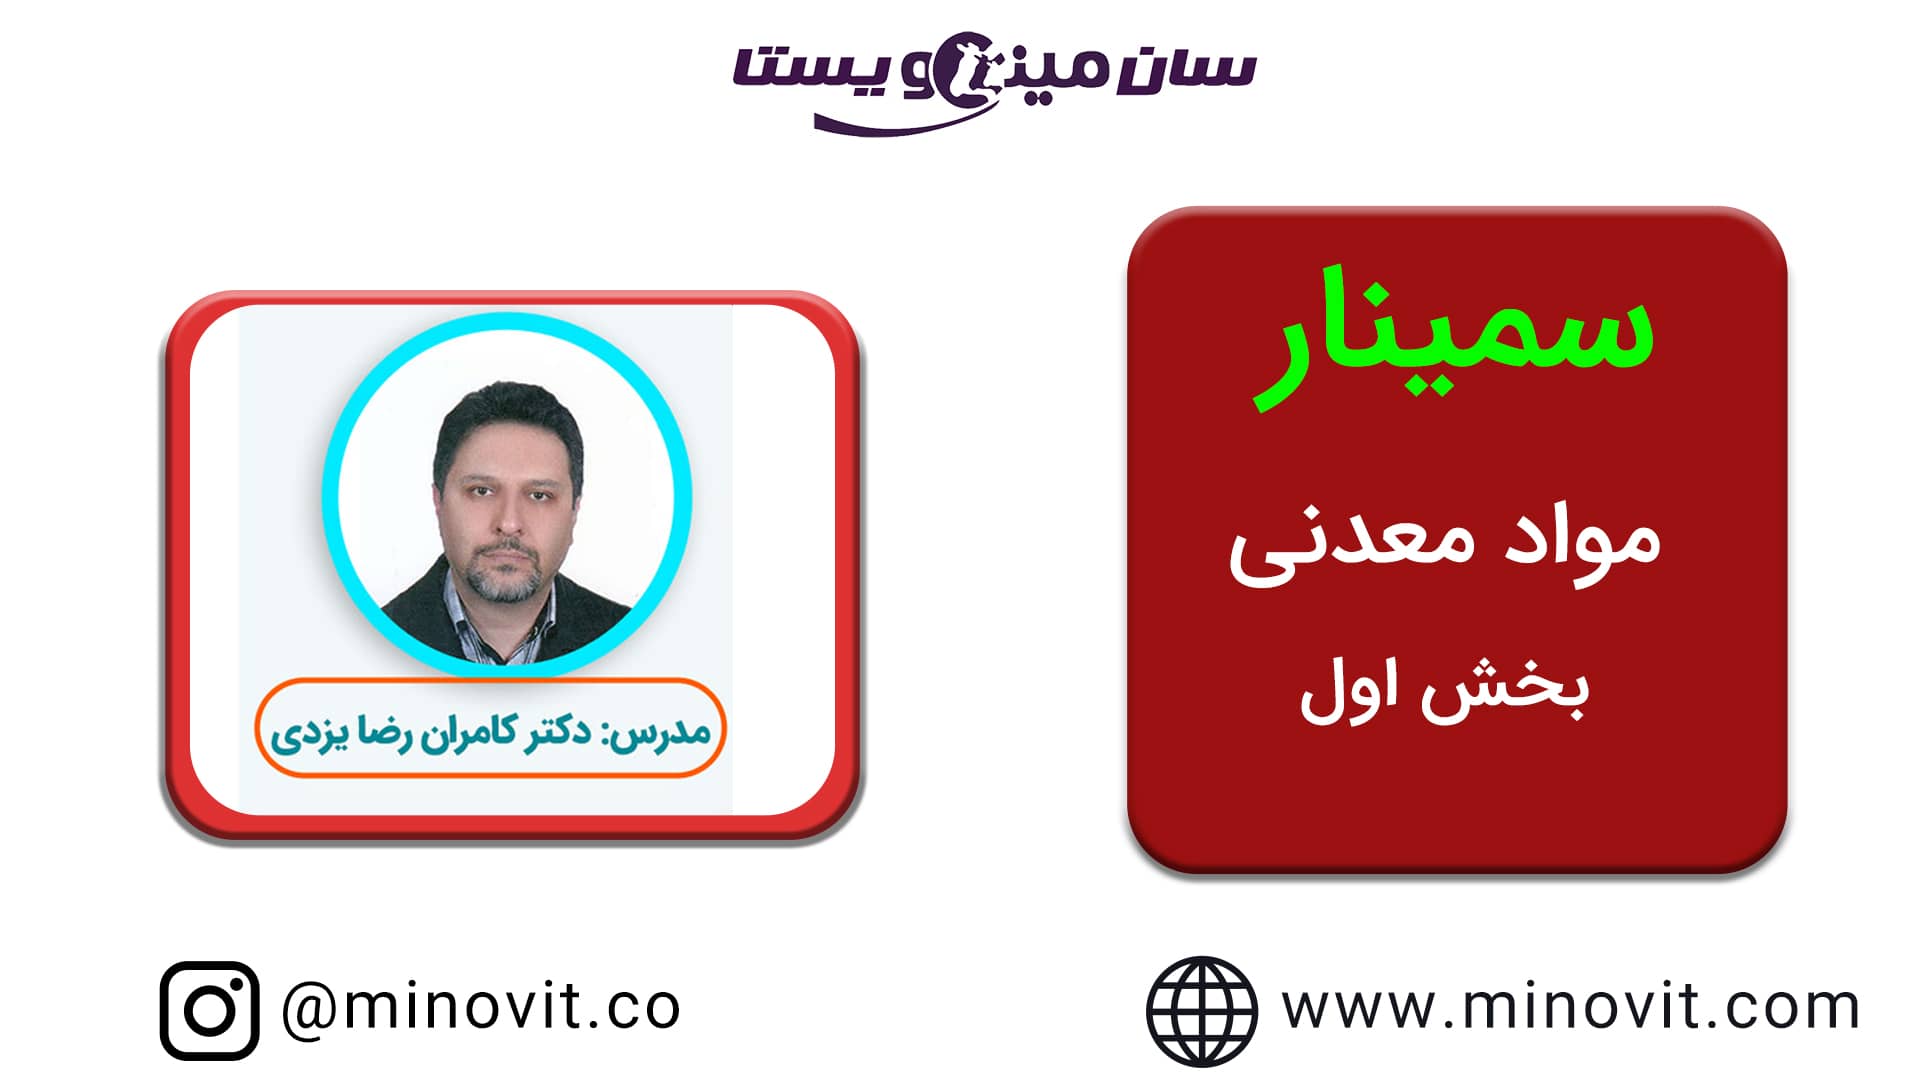 سمینار مواد معدنی گرگان مدرس دکتر کامران رضا یزدی